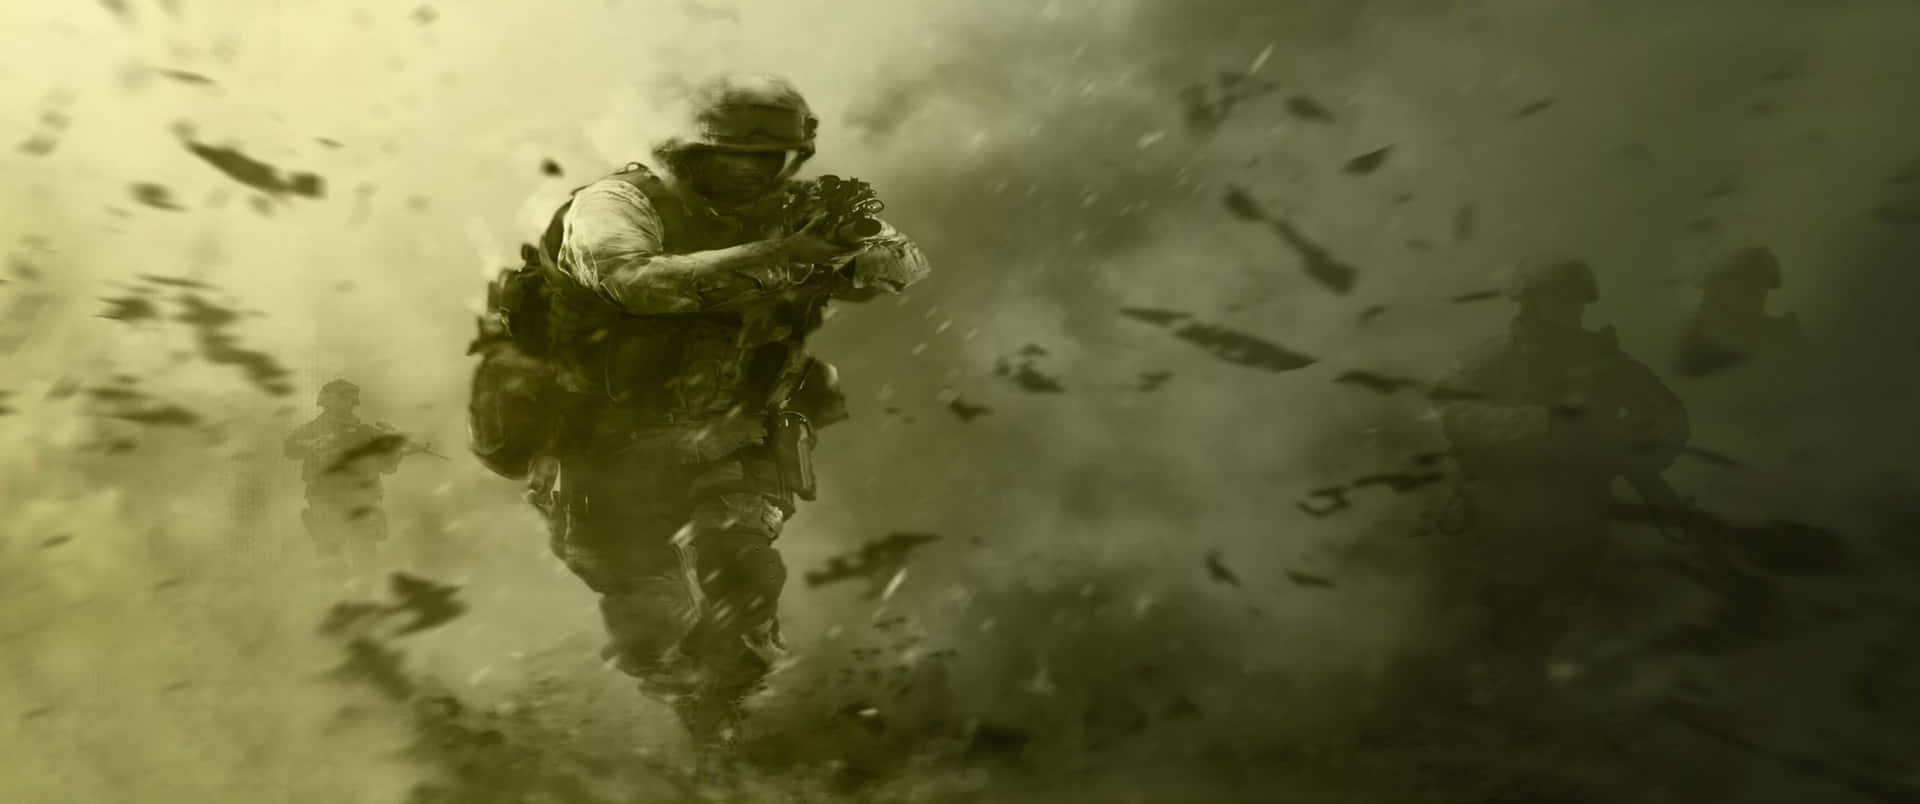 Fuggiredall'esplosione Sfondo Call Of Duty Modern Warfare 3440x1440p